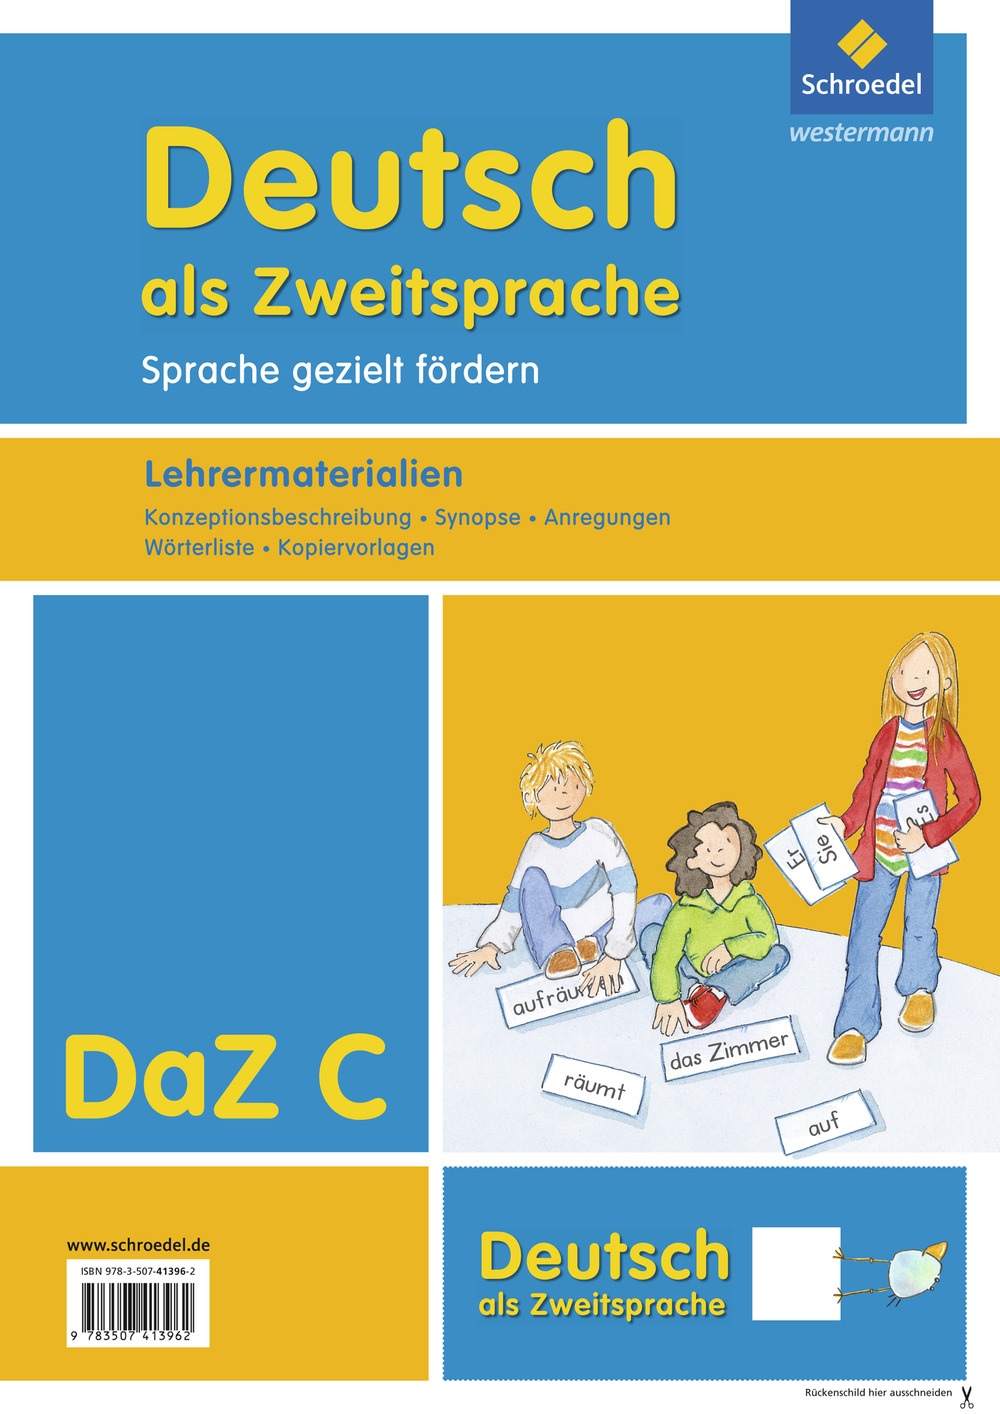 deutsch als fremdsprache nach themen pdf